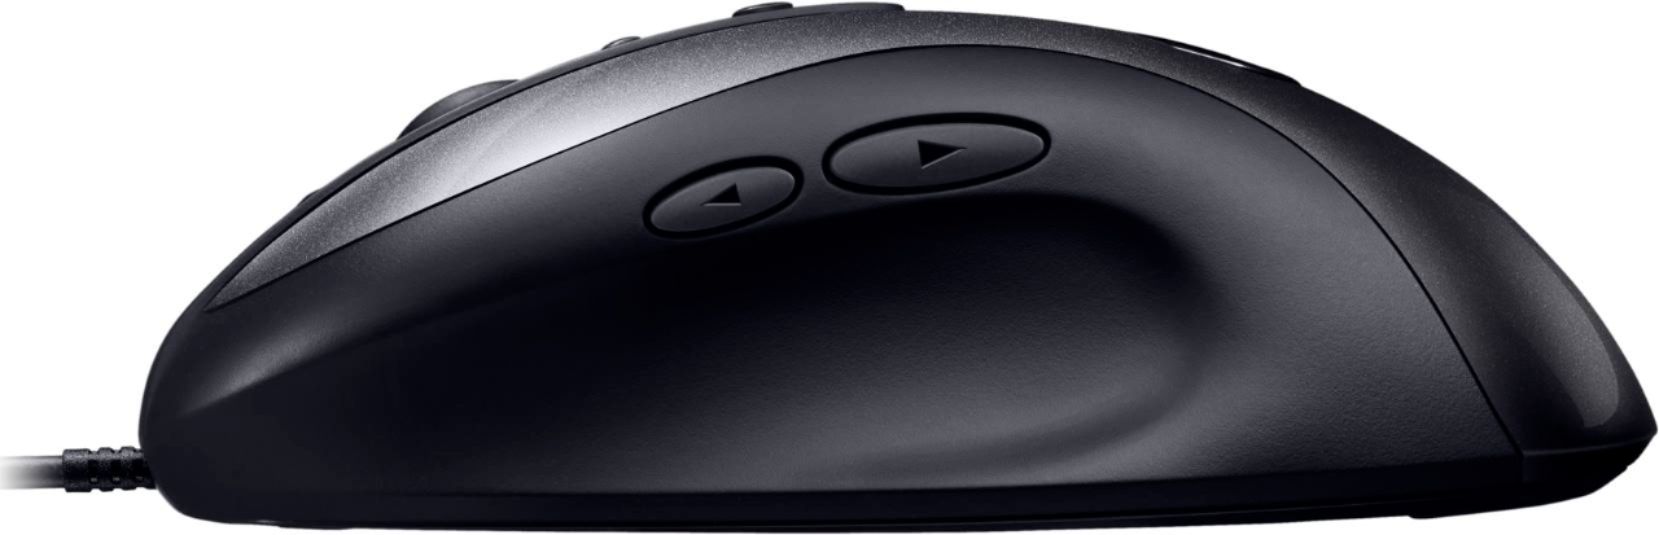 ørn Vænne sig til mount Best Buy: Logitech G MX518 Wired Optical Gaming Mouse Black/Gray 910-005542